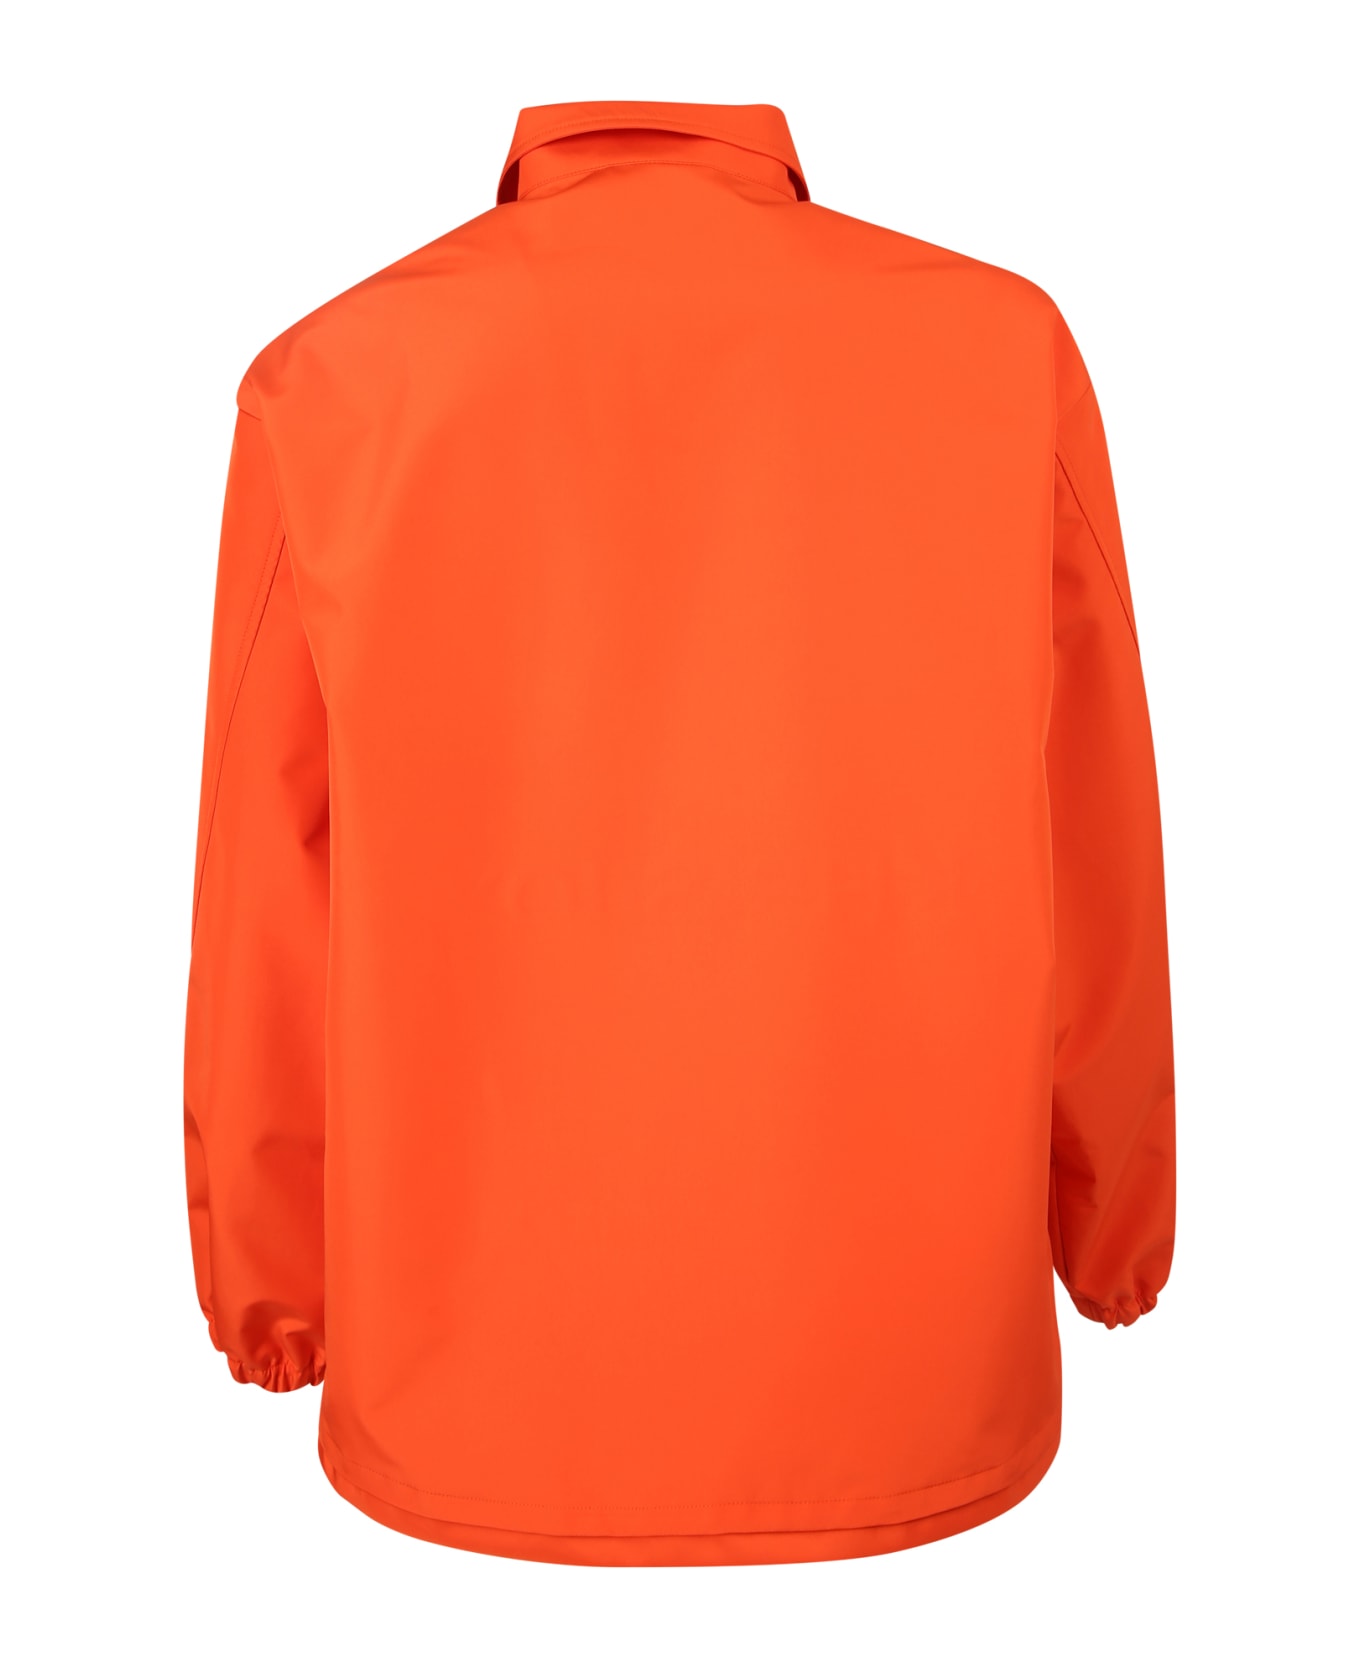 Khrisjoy Logo Jacket Bomber - Orange ジャケット